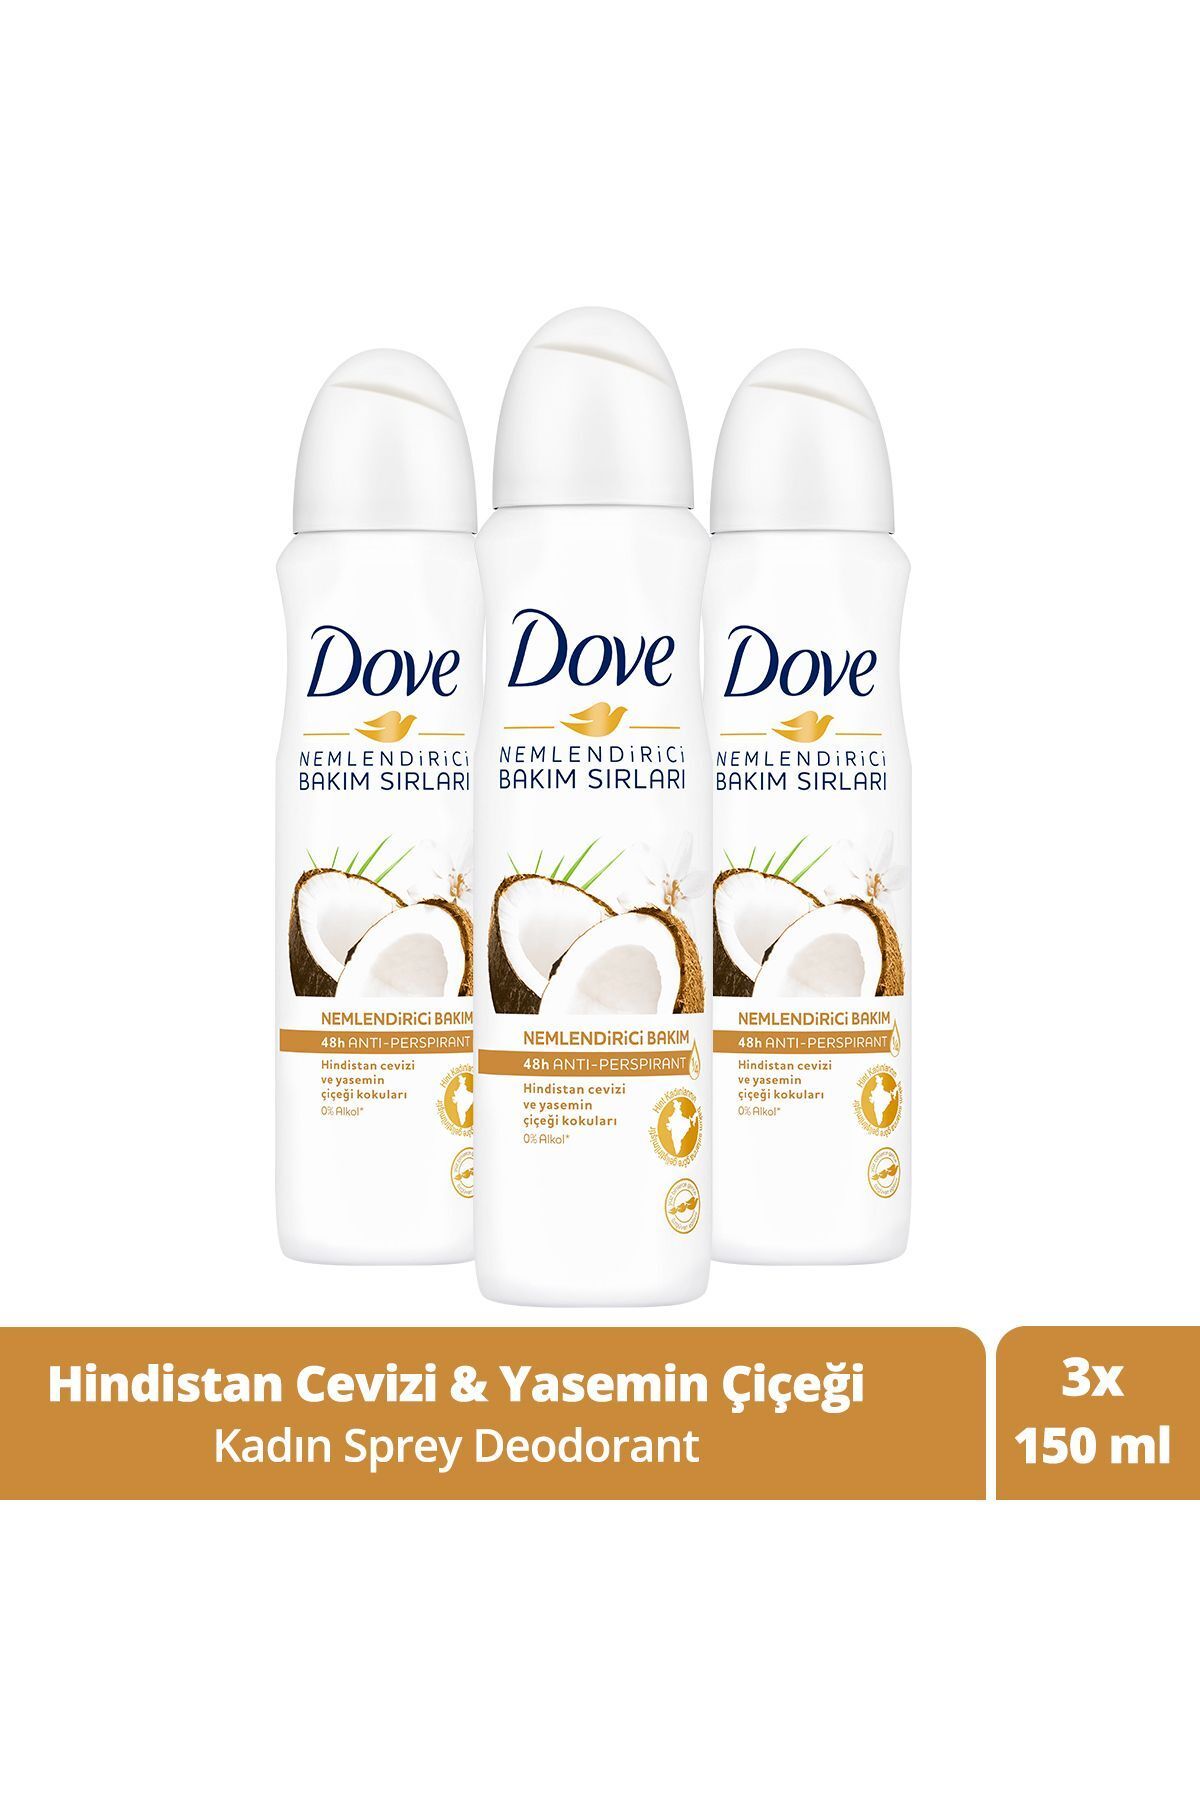 Dove Kadın Sprey Deodorant Nemlendirici Bakım Hindistan Cevizi Ve Yasemin Çiçeği 150 ml X3 Adet